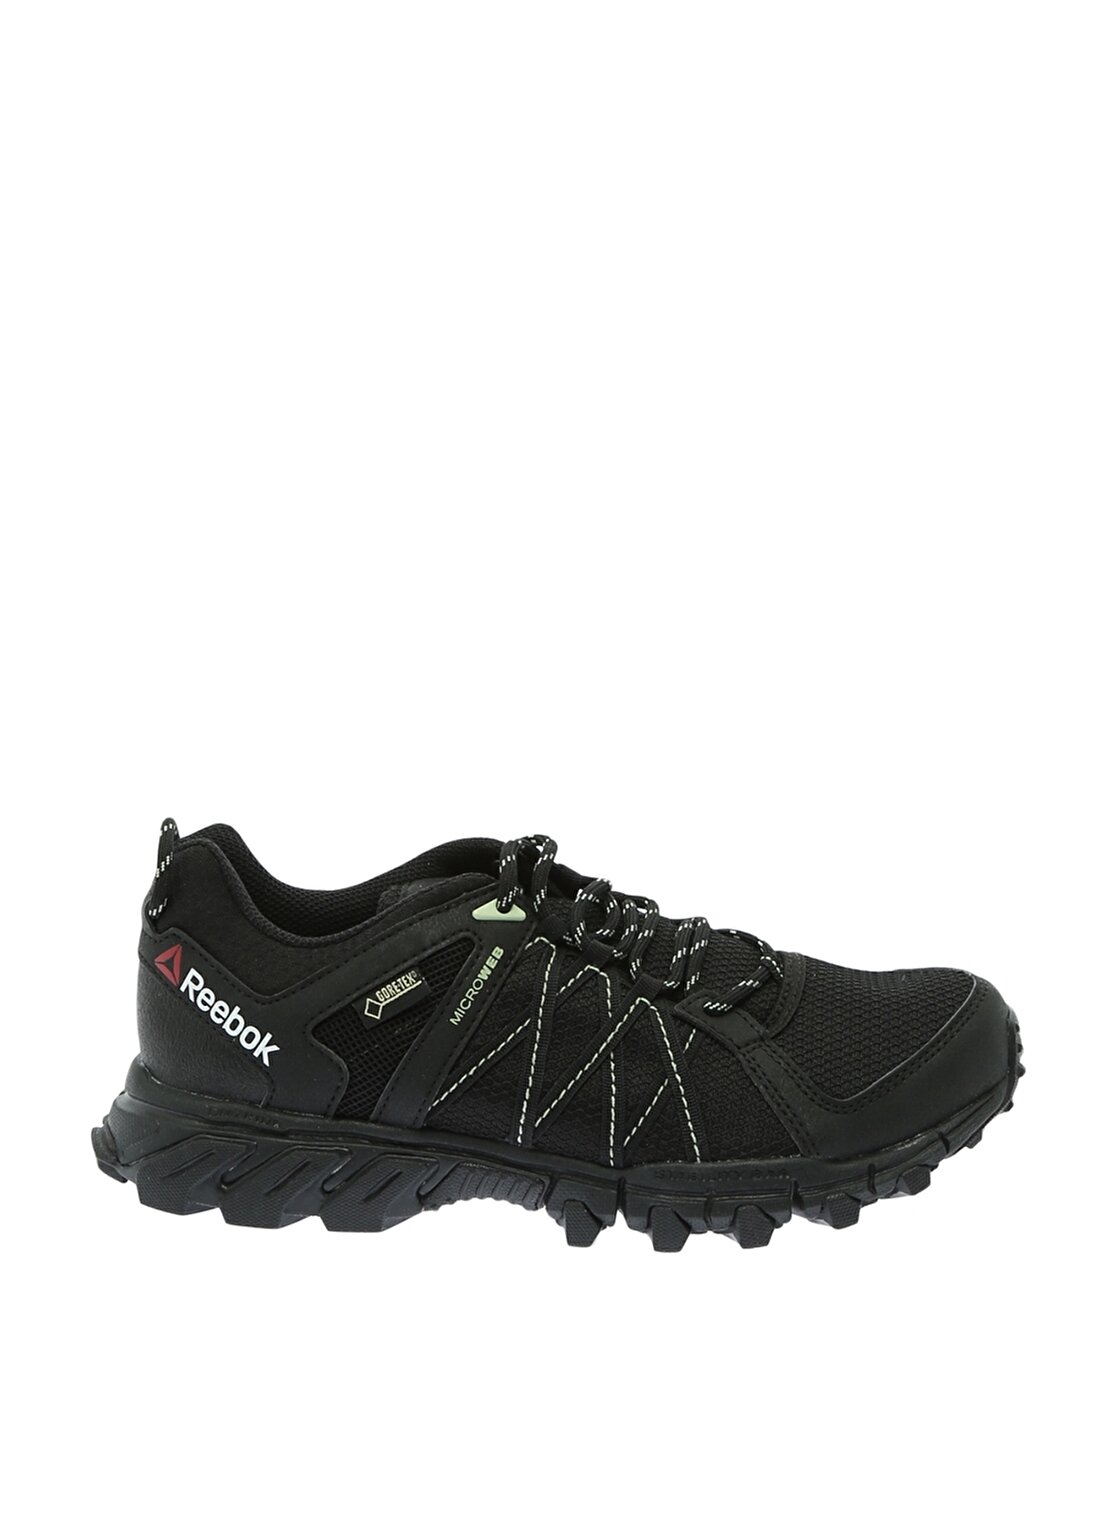 Reebok Trailgrip Rs 5.0 Gtx Yürüyüş Ayakkabısı